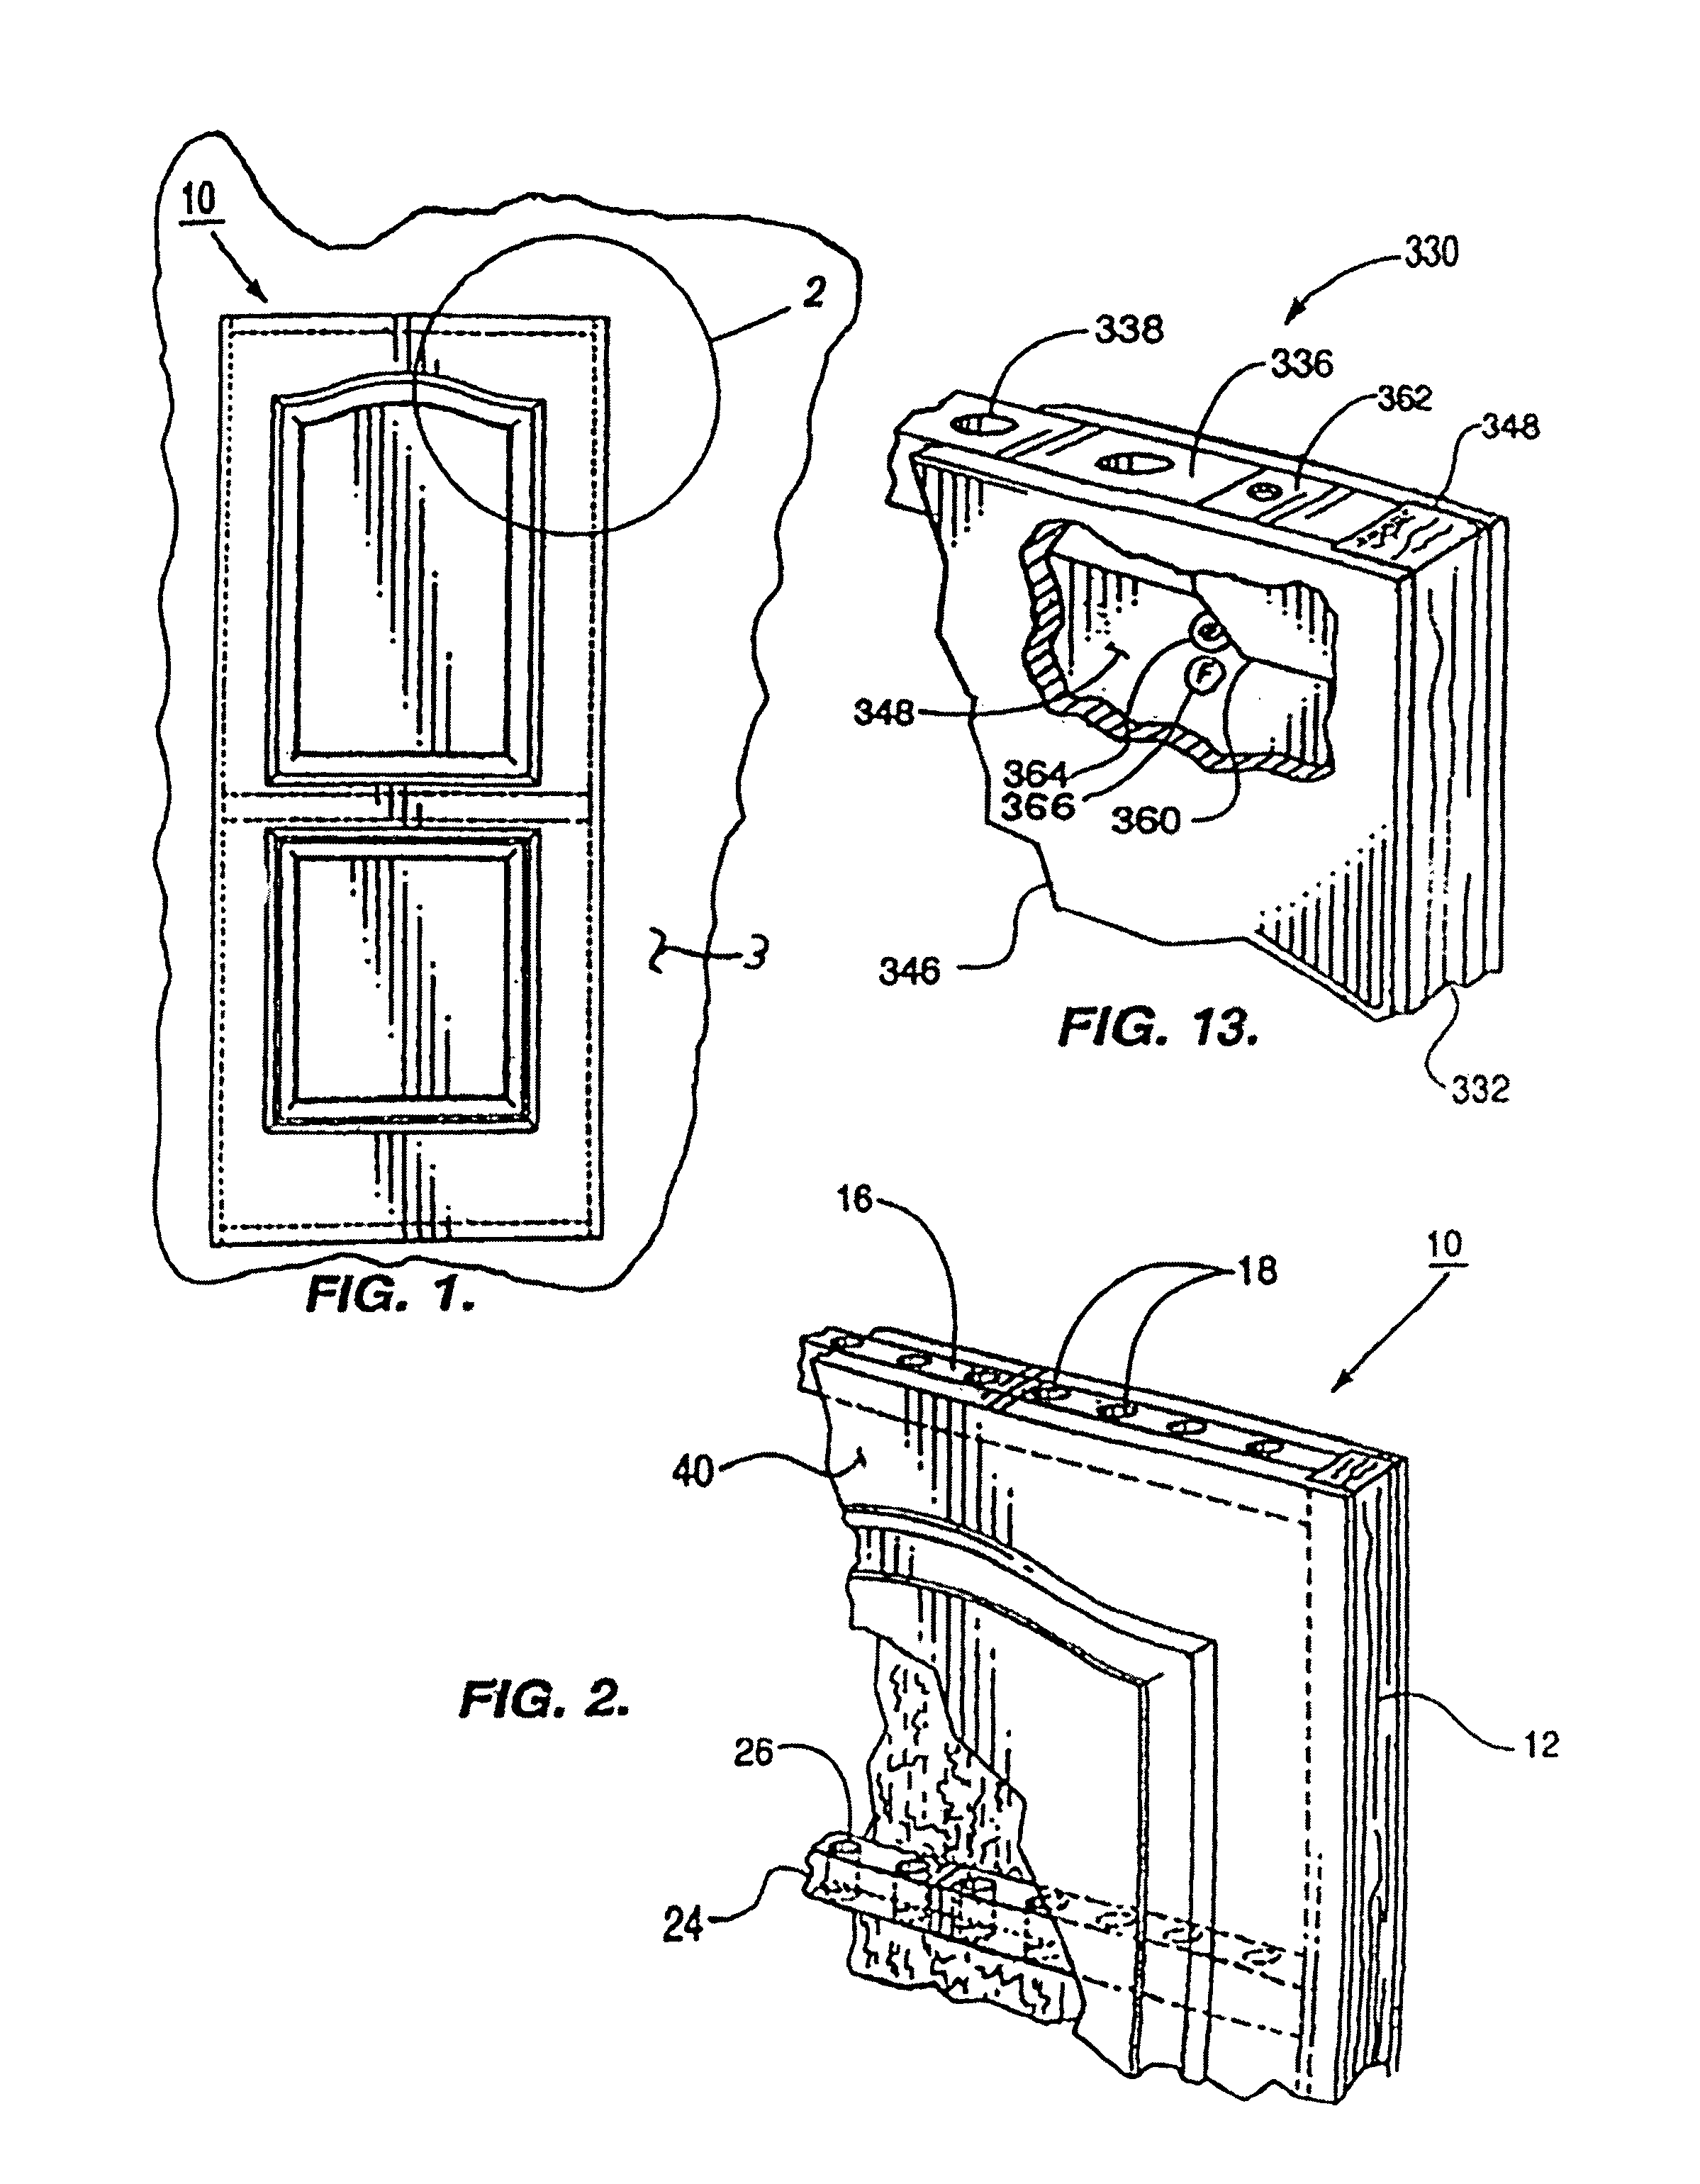 Hollow core door with internal air flow